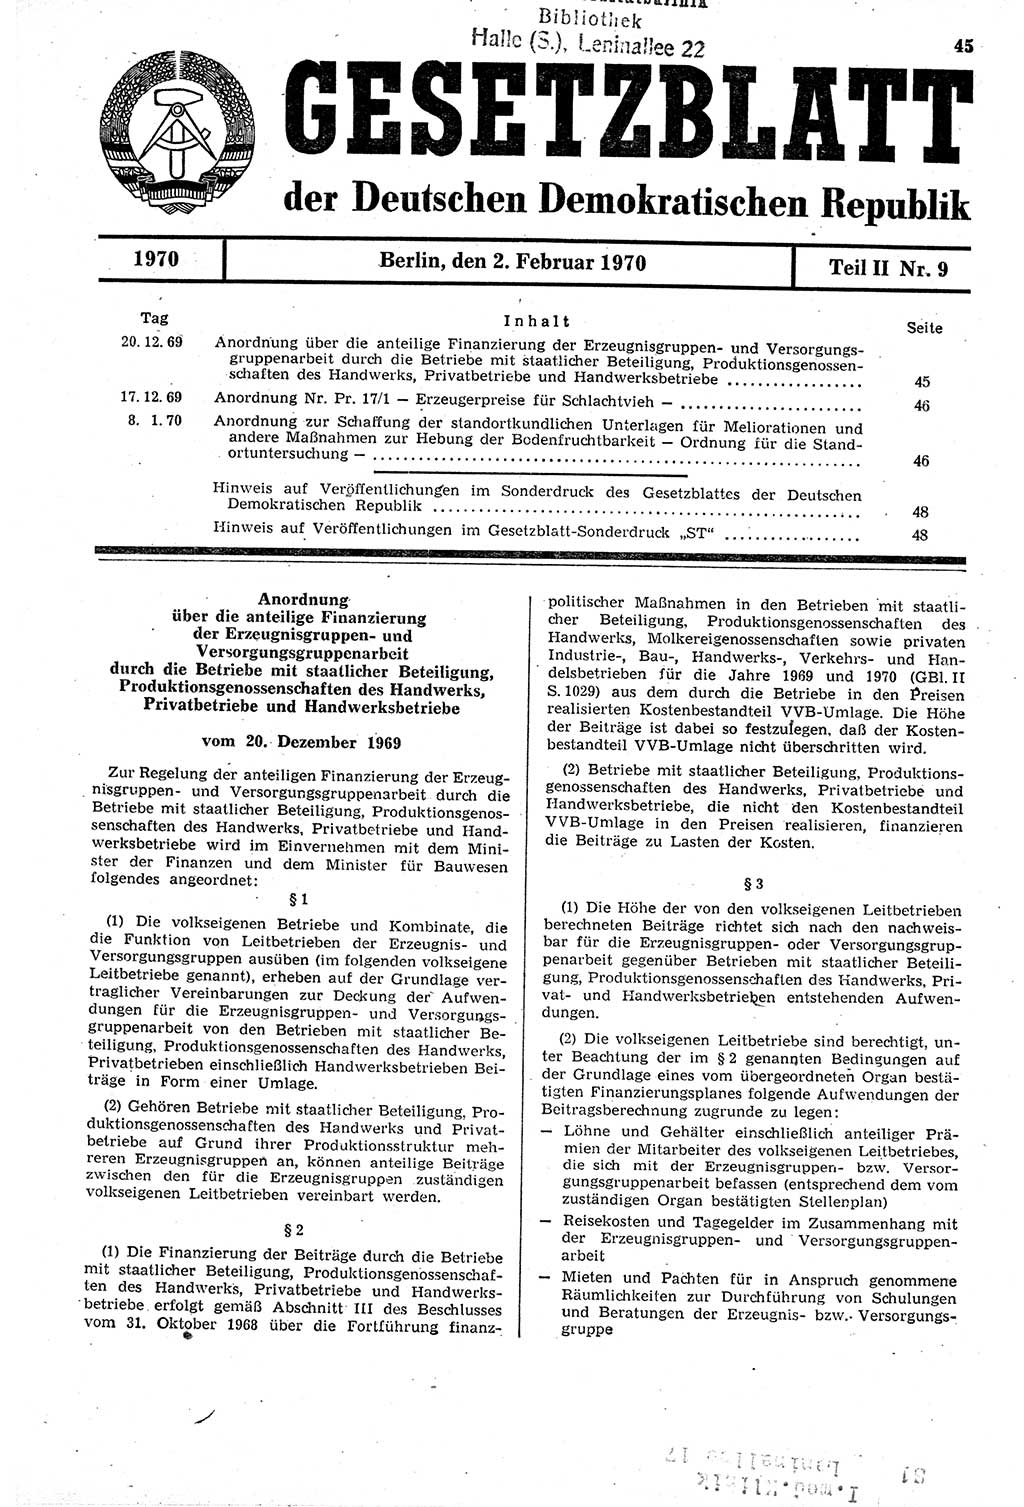 Gesetzblatt (GBl.) der Deutschen Demokratischen Republik (DDR) Teil ⅠⅠ 1970, Seite 45 (GBl. DDR ⅠⅠ 1970, S. 45)